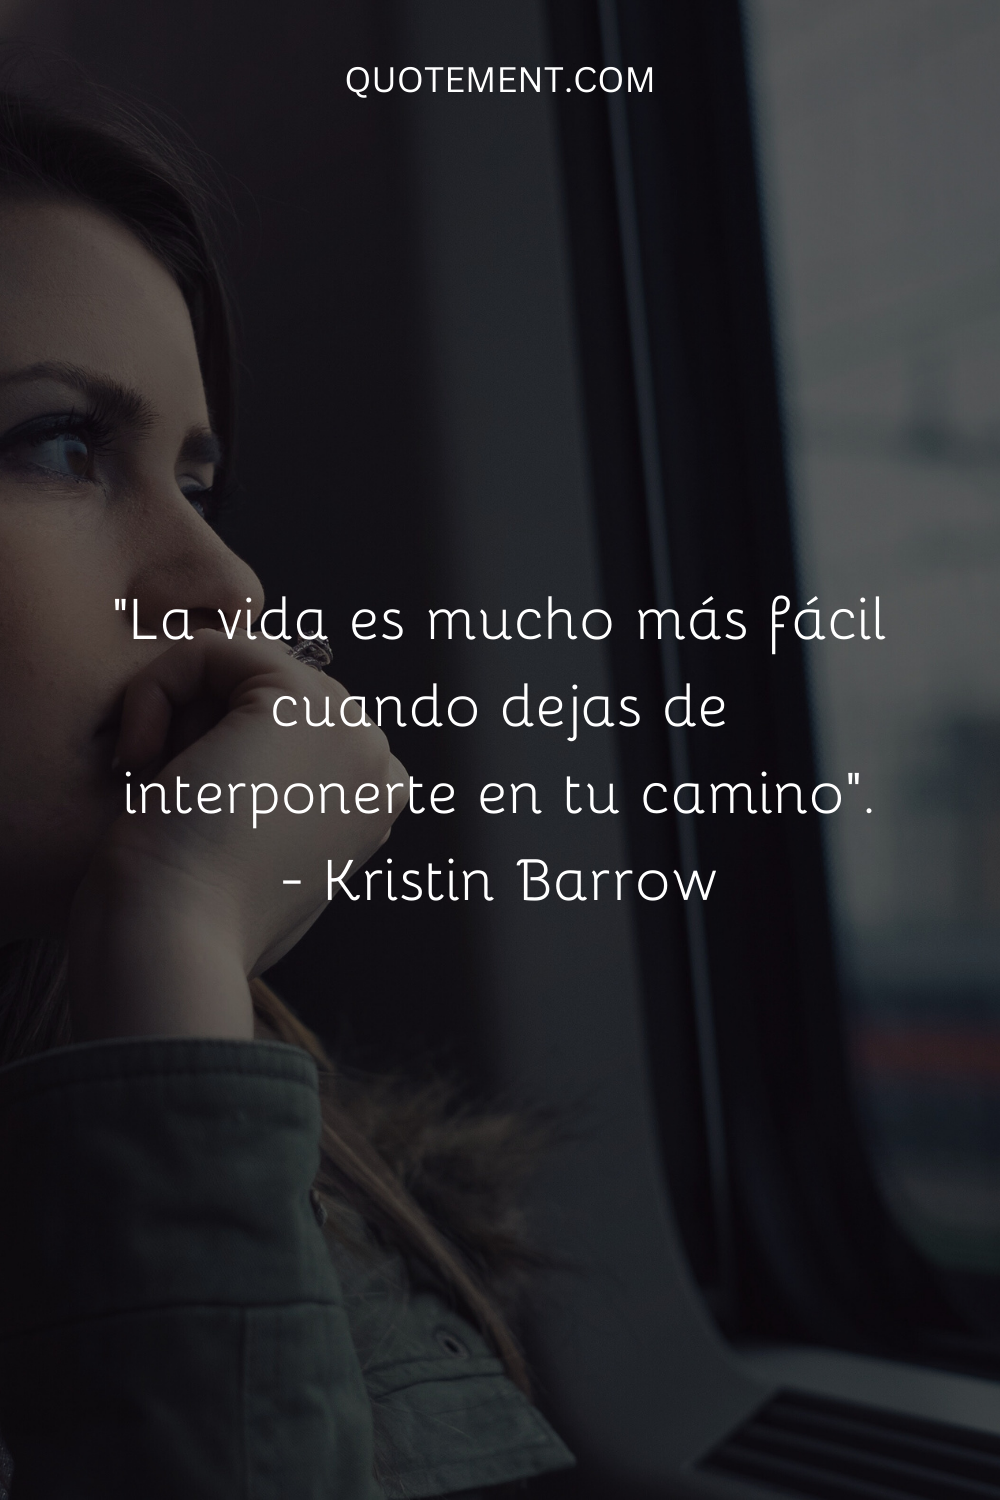 "La vida es mucho más fácil cuando dejas de interponerte en tu camino". - Kristin Barrow